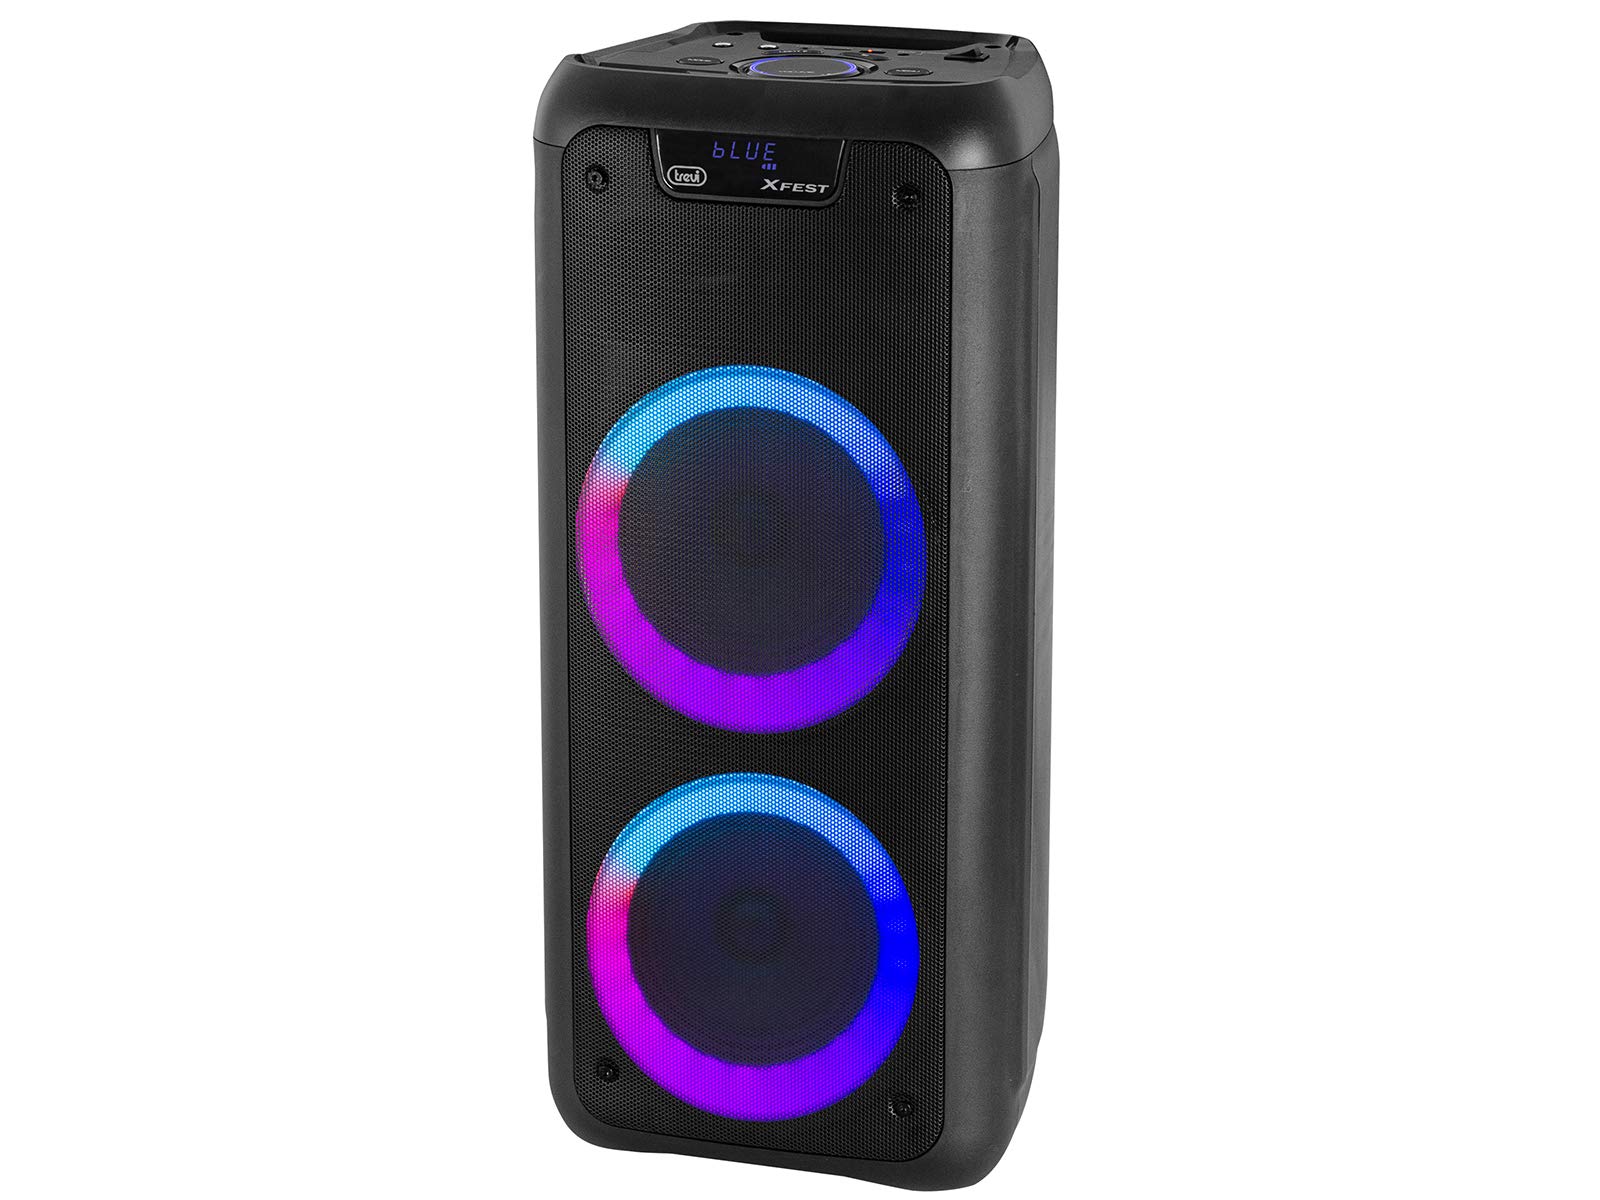 Trevi XFest XF 600 KB Tragbarer Lautsprecher mit 80W Verstärkung, Wireless Musikbox mit Dynamischem Mikrofon für Karaoke, USB-Anschluss, Micro SD, AUX-IN, Eingebauter Akku, Blaue LED Anzeige